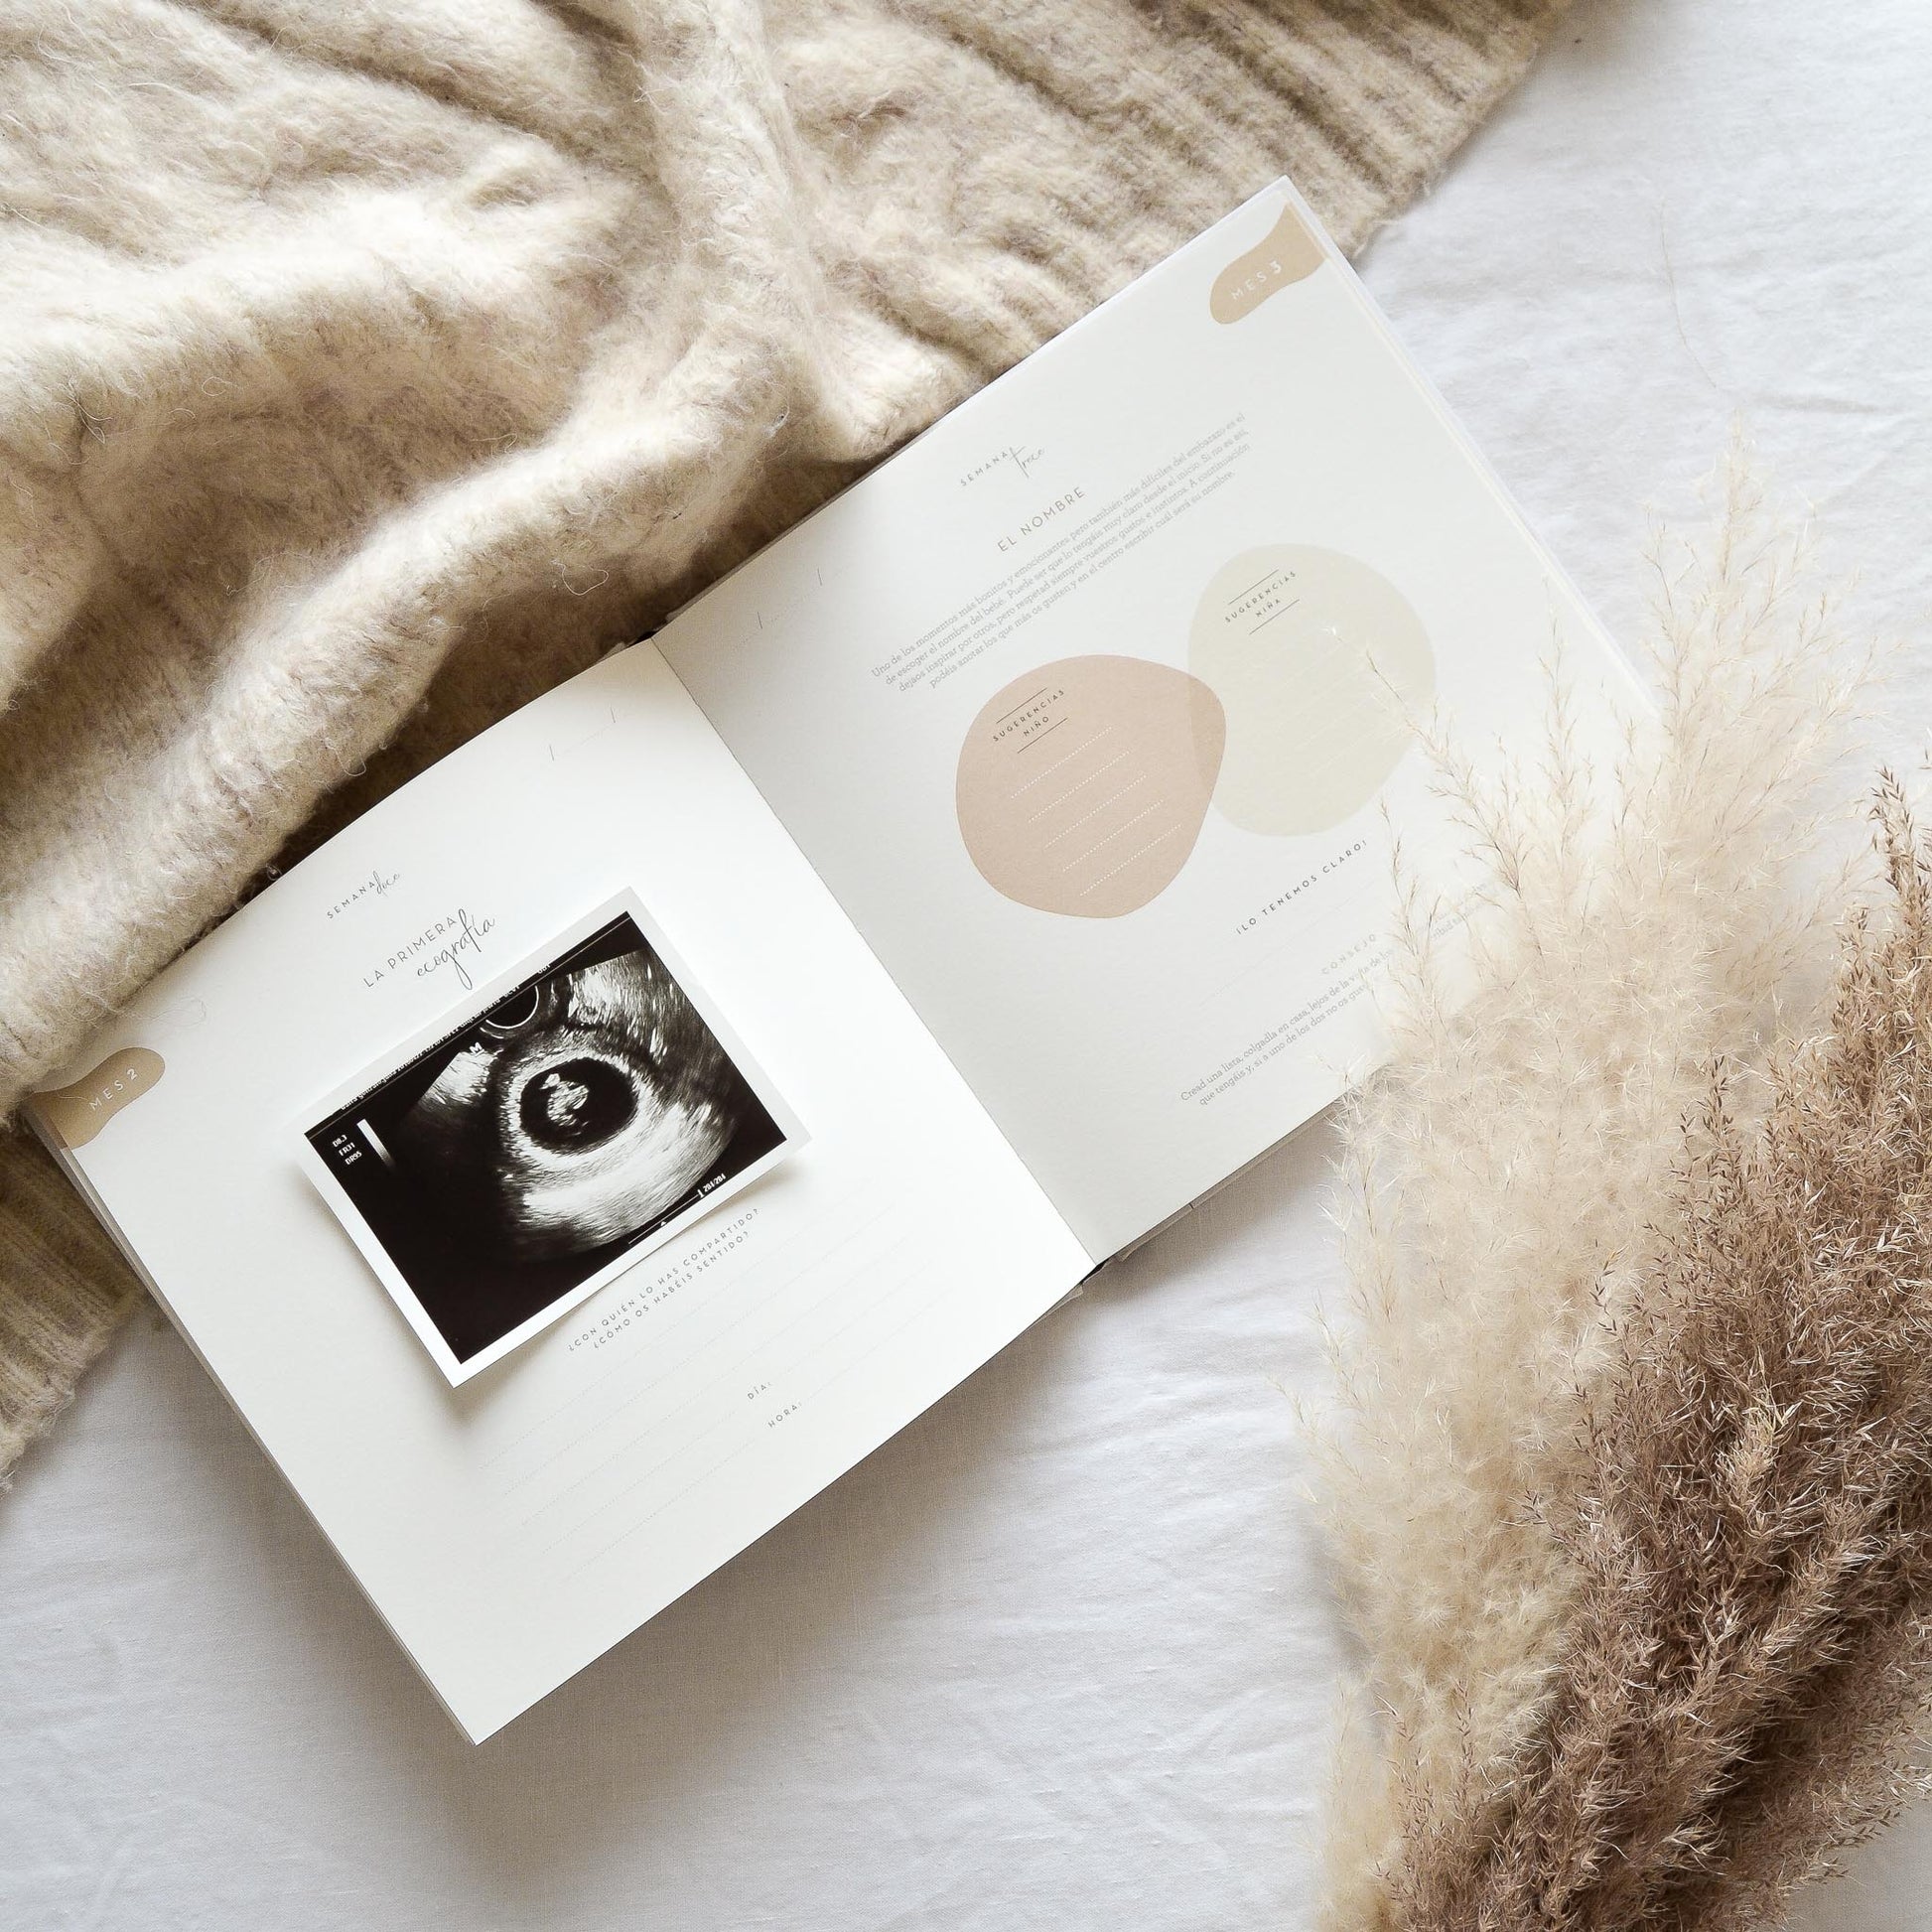 Mi Diario de Embarazo: Diario de embarazo para que escribas lo que sientes  y organices lo que necesitas durante esos 9 meses bonitos y especiales